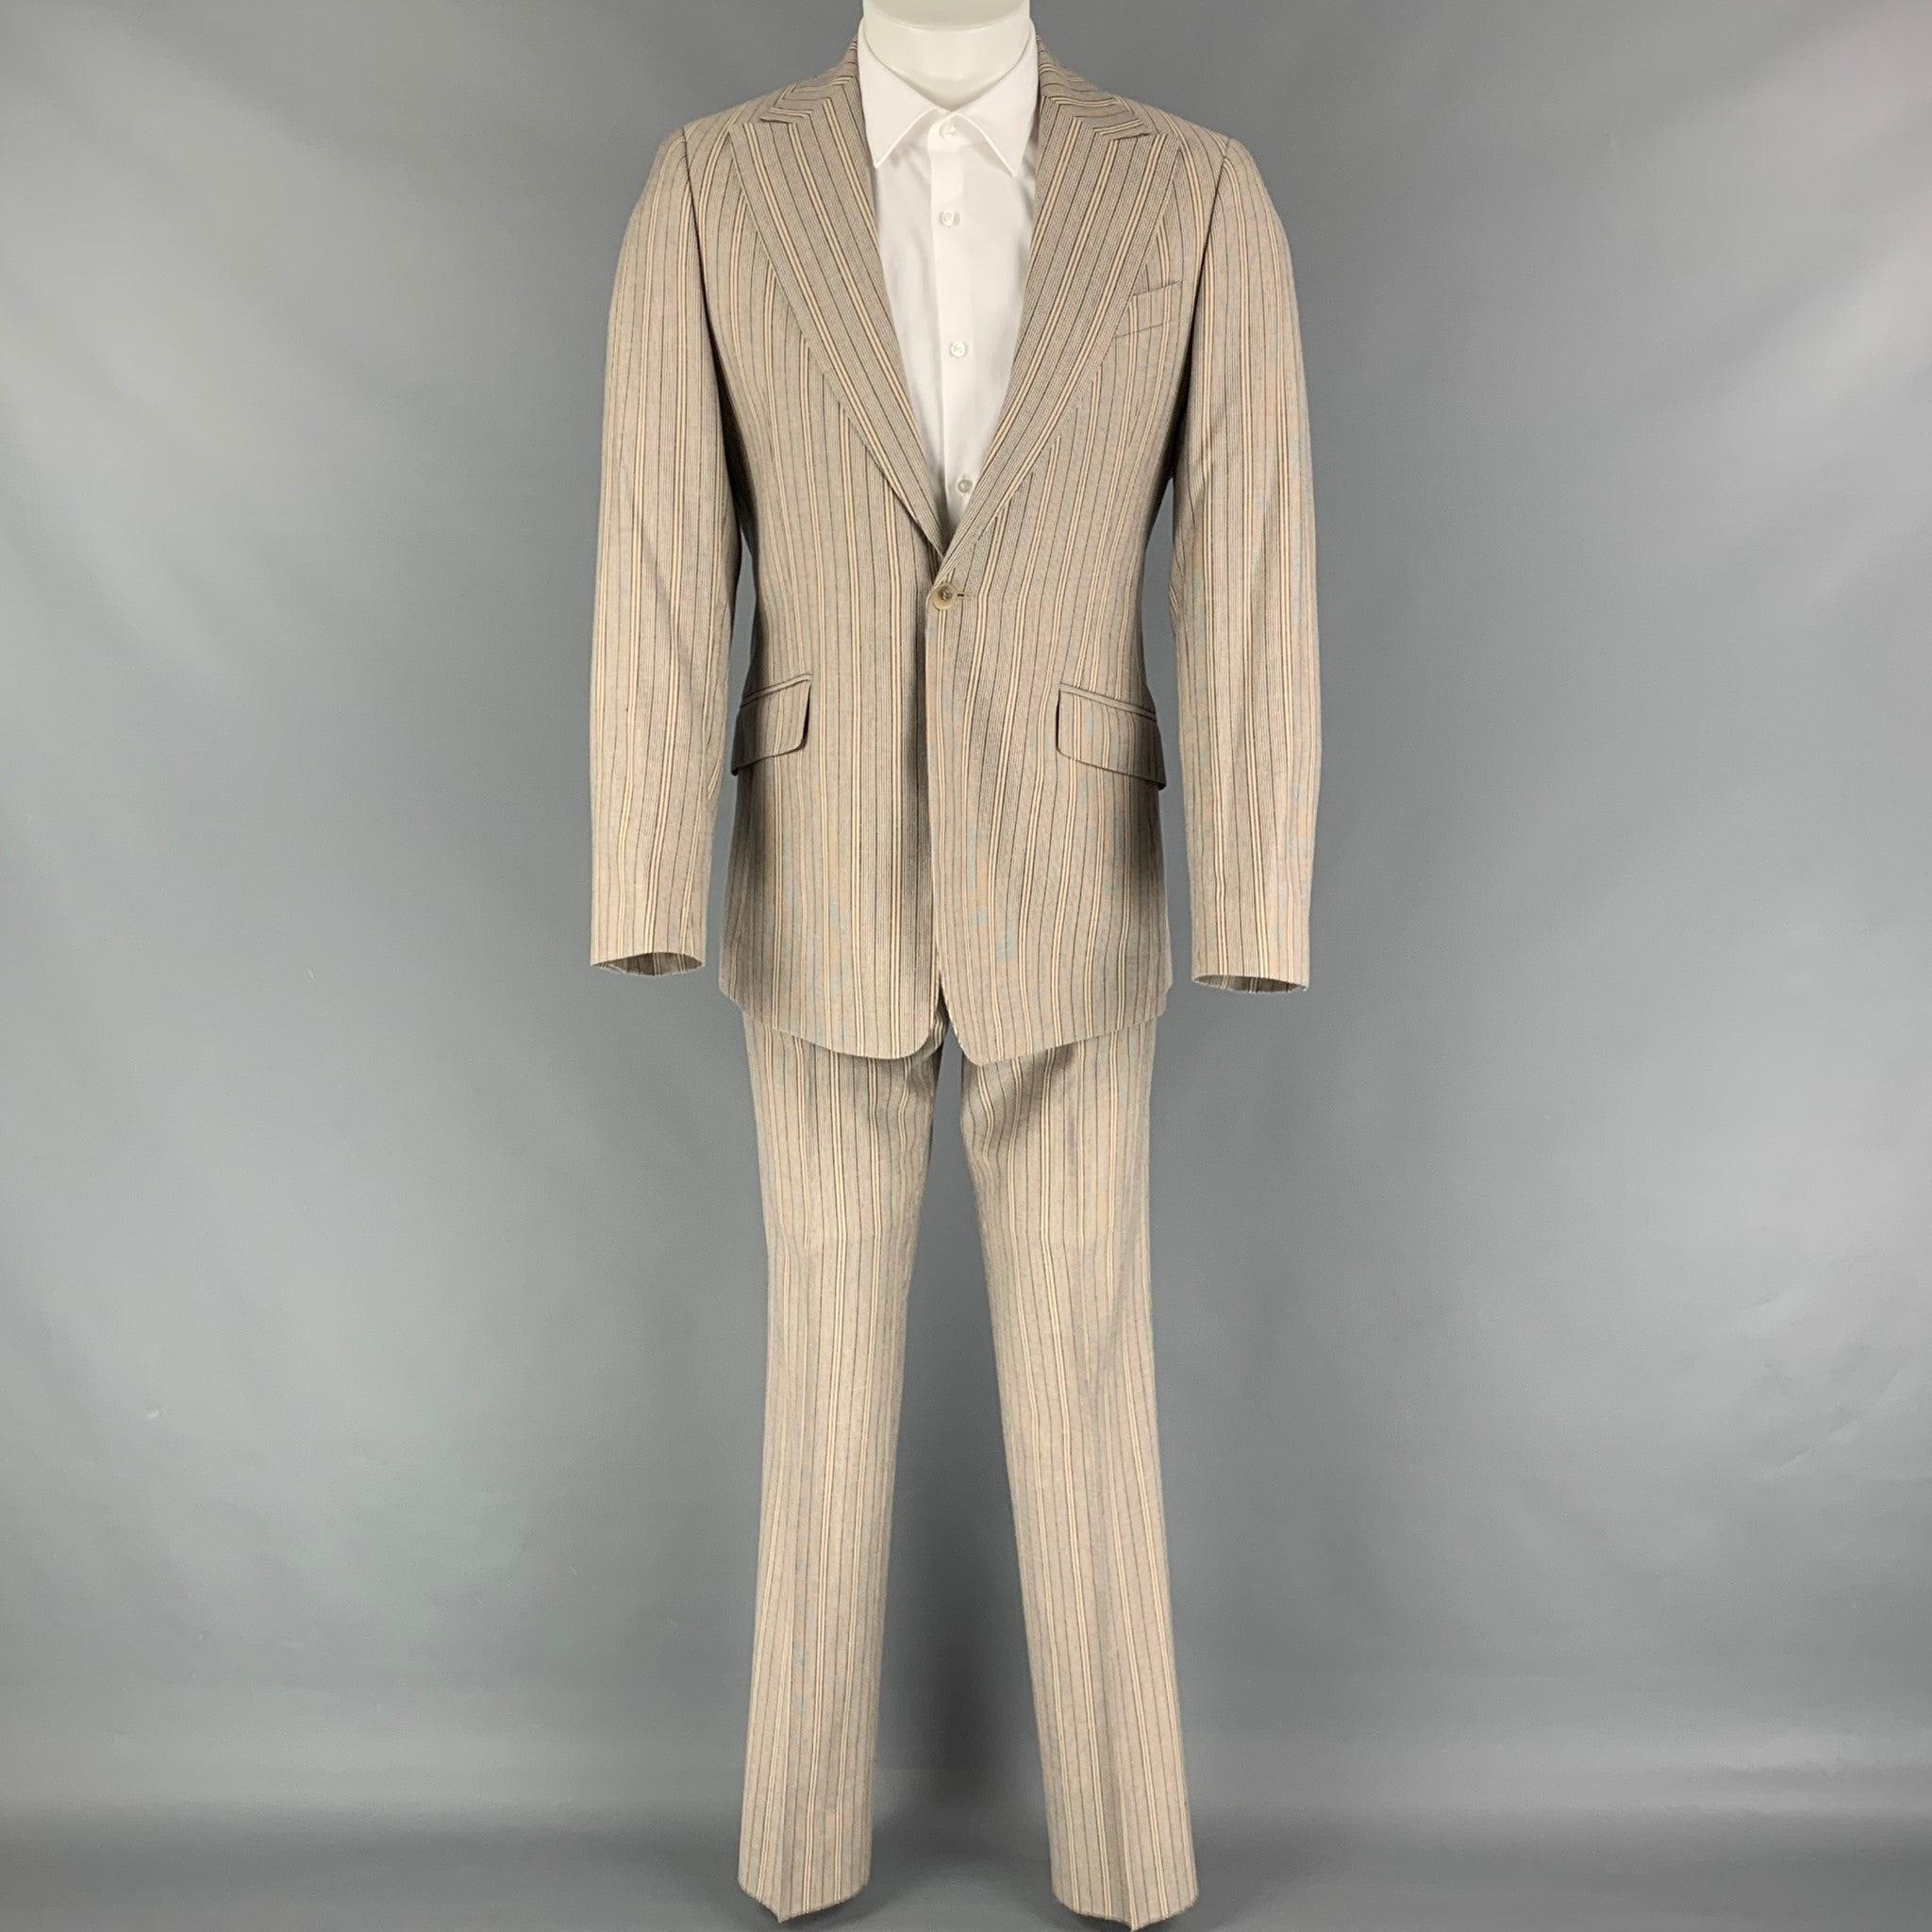 D&G by DOLCE & GABBANA
Le costume est un mélange de polyester à rayures kaki et marine avec une doublure complète. Il comprend un manteau de sport à un seul boutonnage avec un revers en pointe et un pantalon assorti à devant plat. Fabriquées en